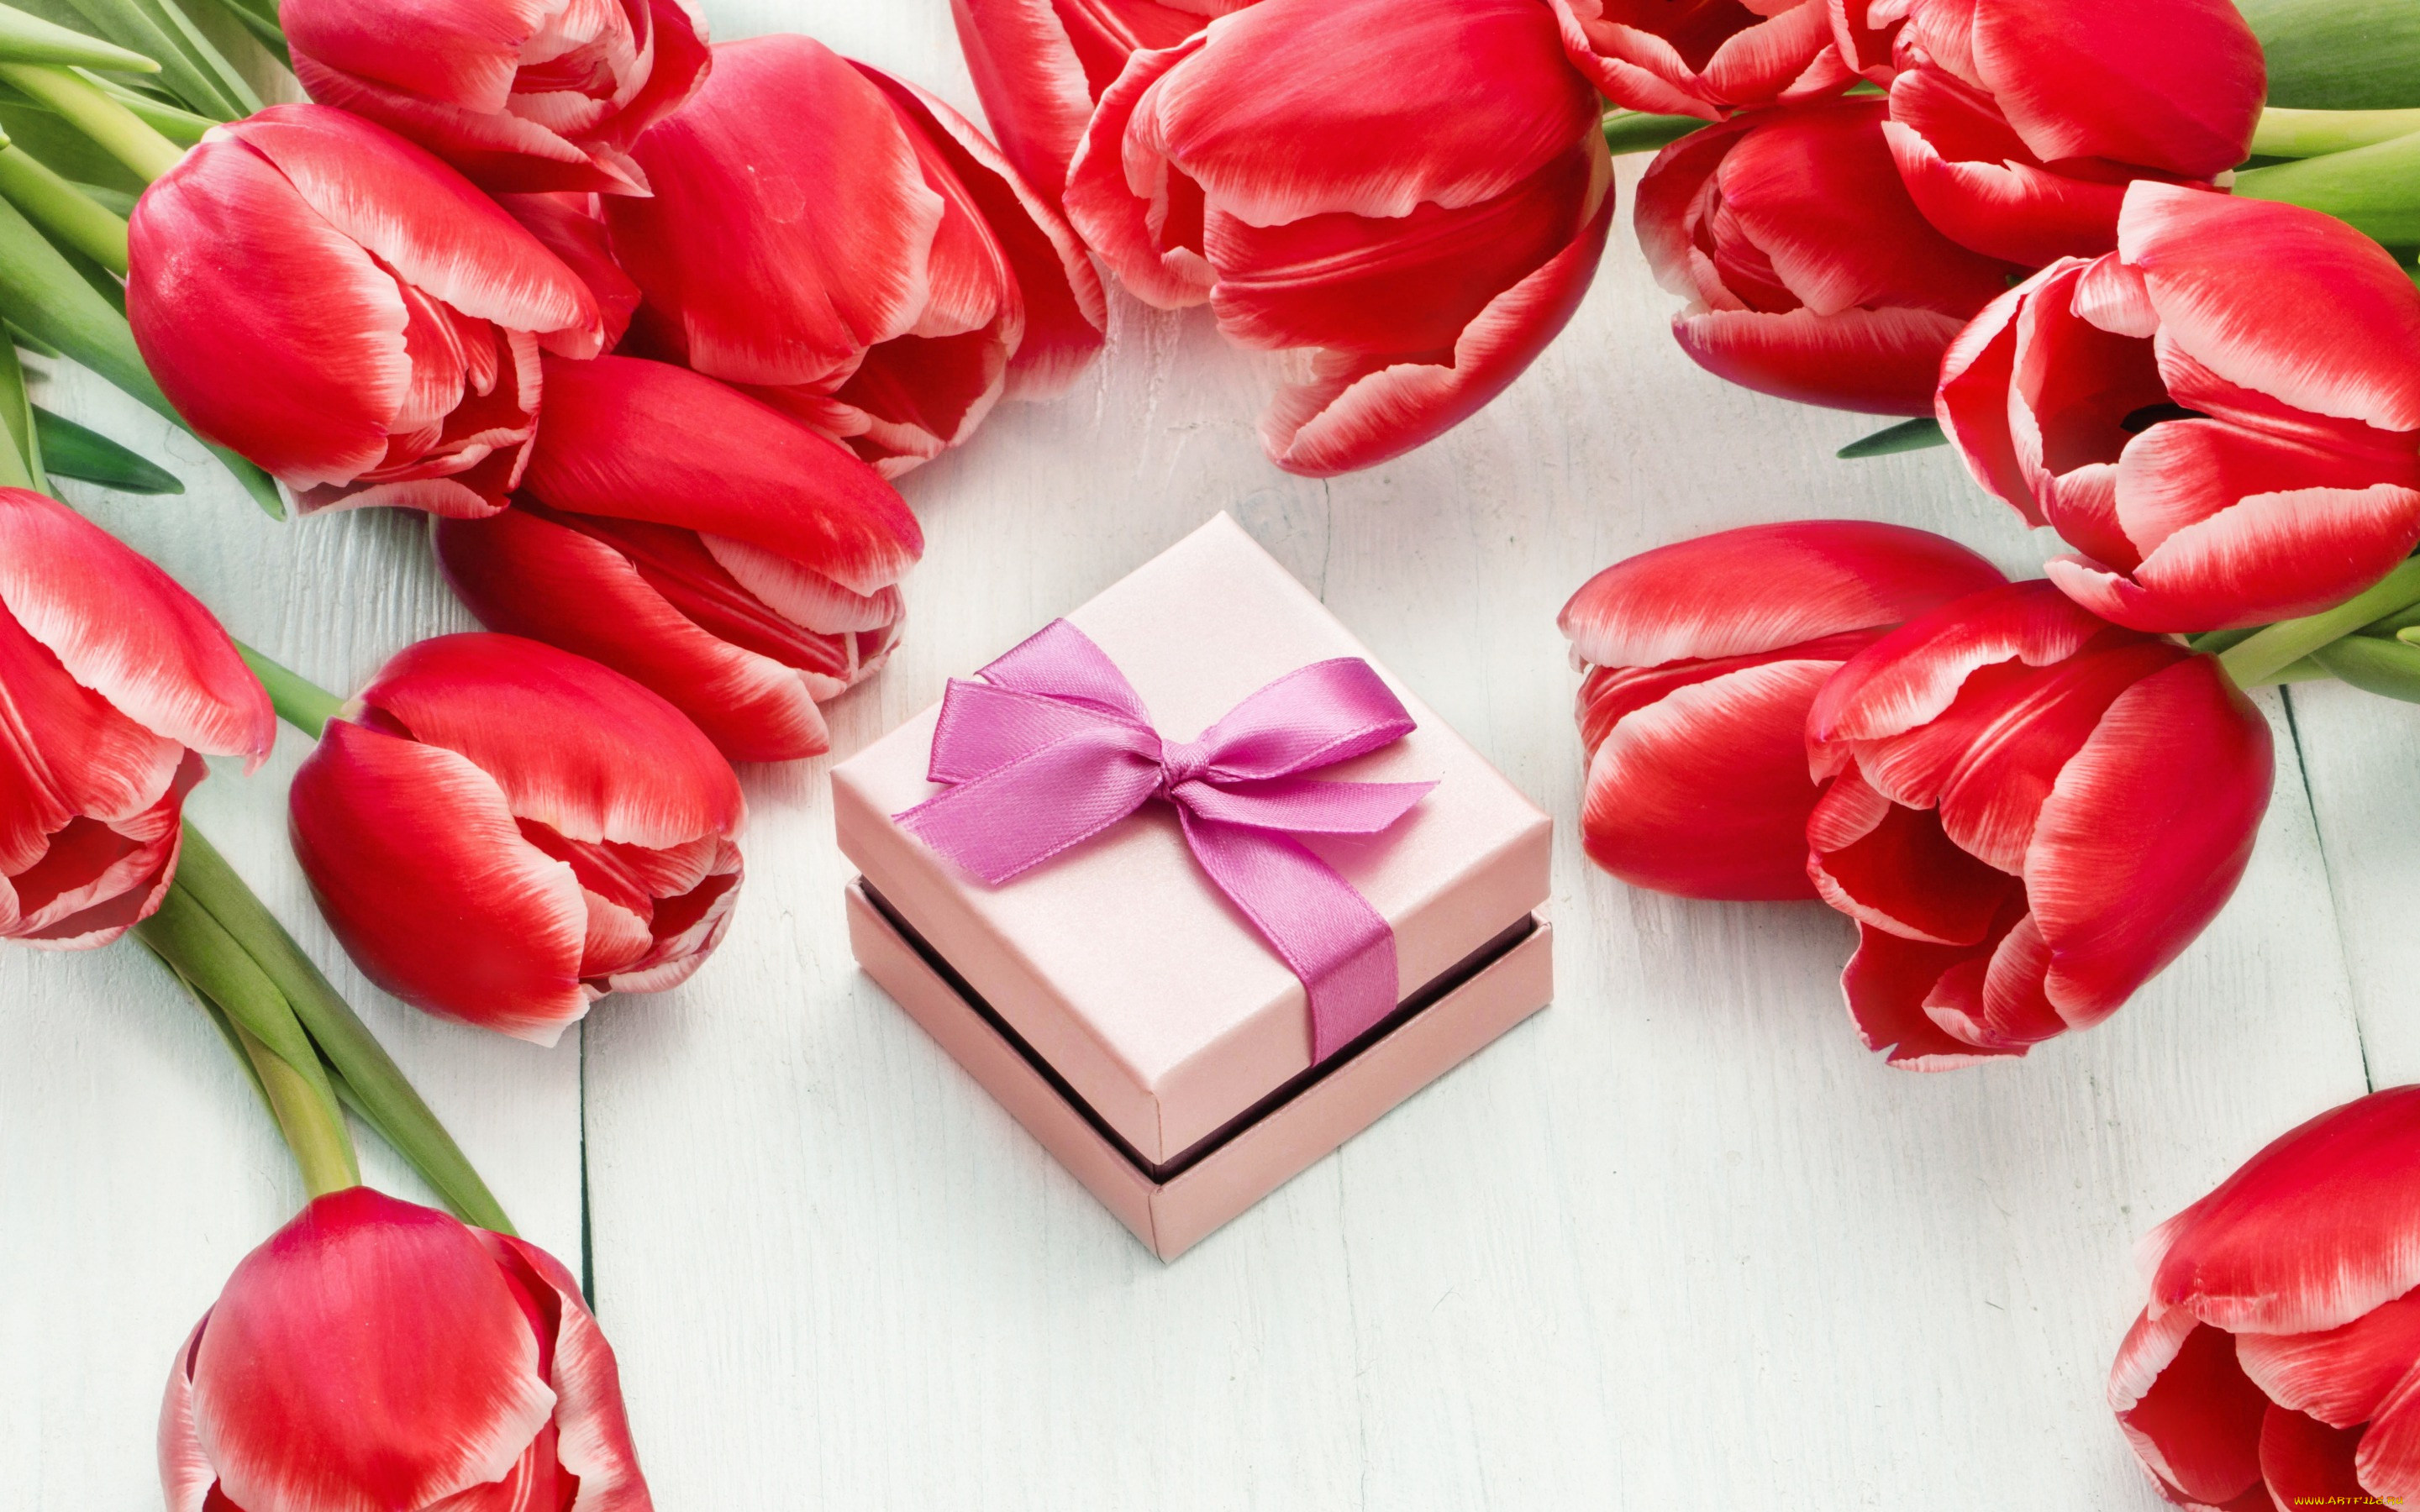 праздничные, международный, женский, день, -, 8, марта, цветы, red, tulips, тюльпаны, 8, марта, romantic, gift, красные, colorful, love